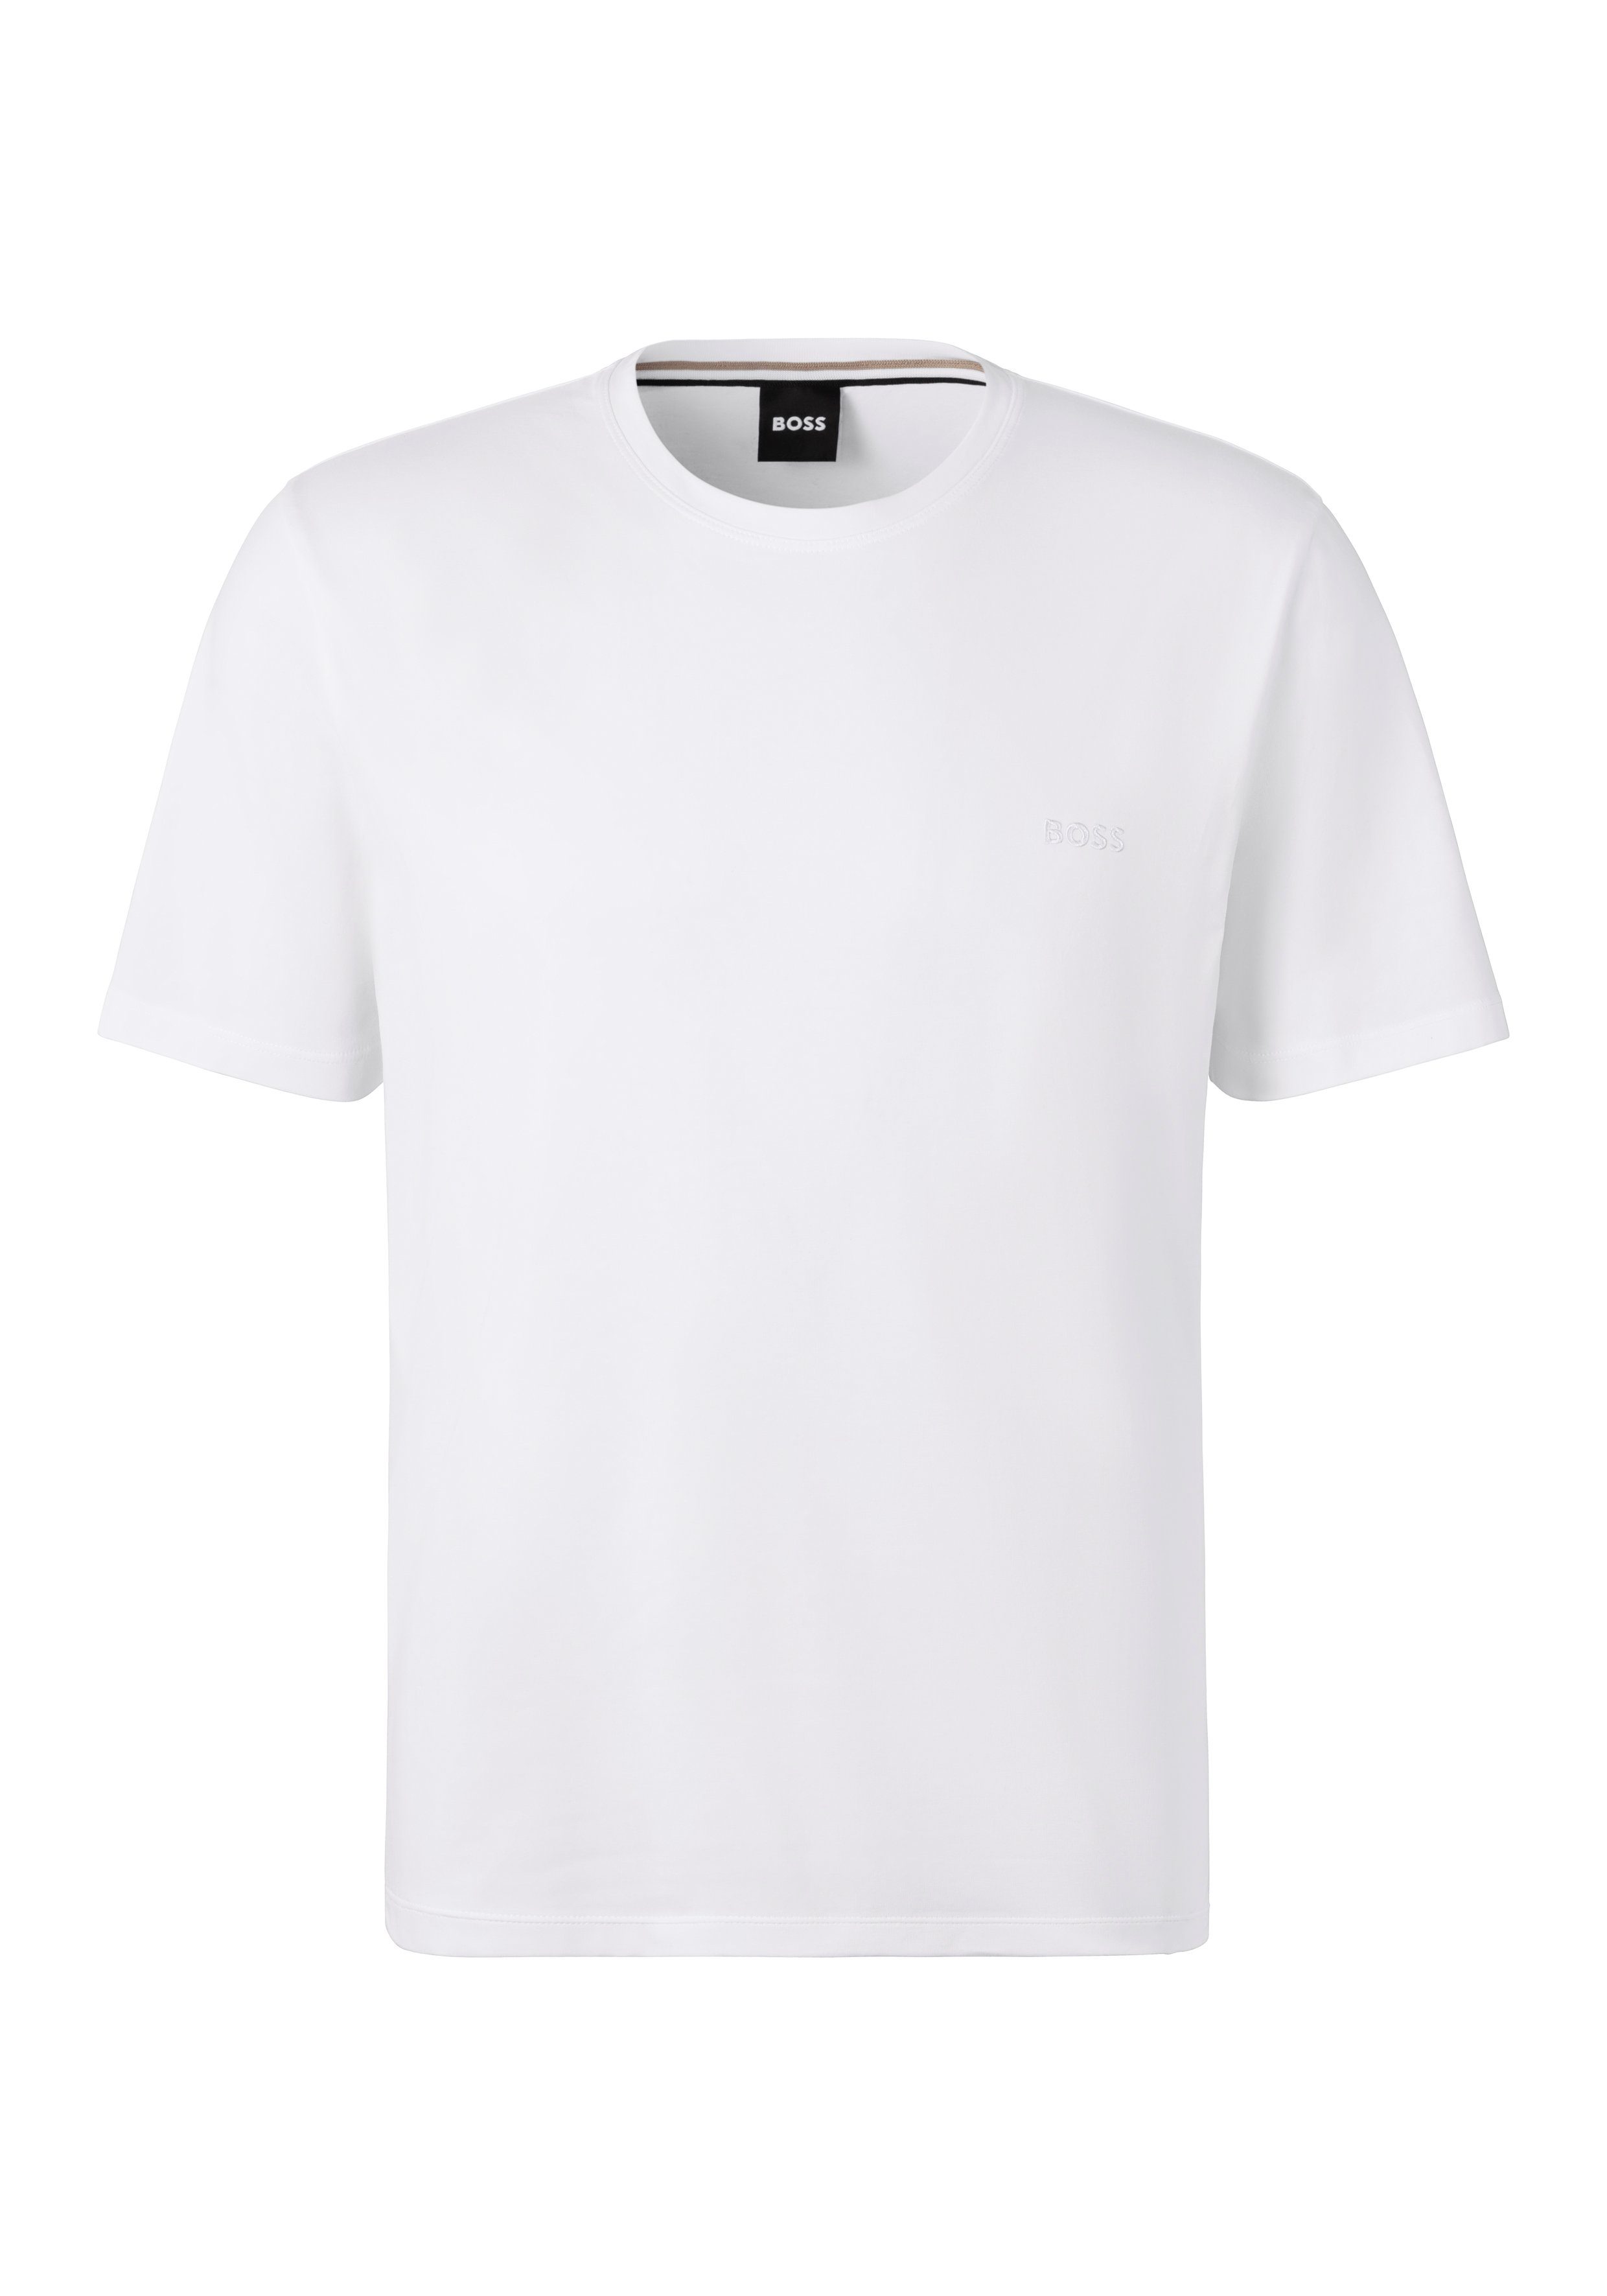 BOSS T-Shirt mit Brustlogo online kaufen | OTTO